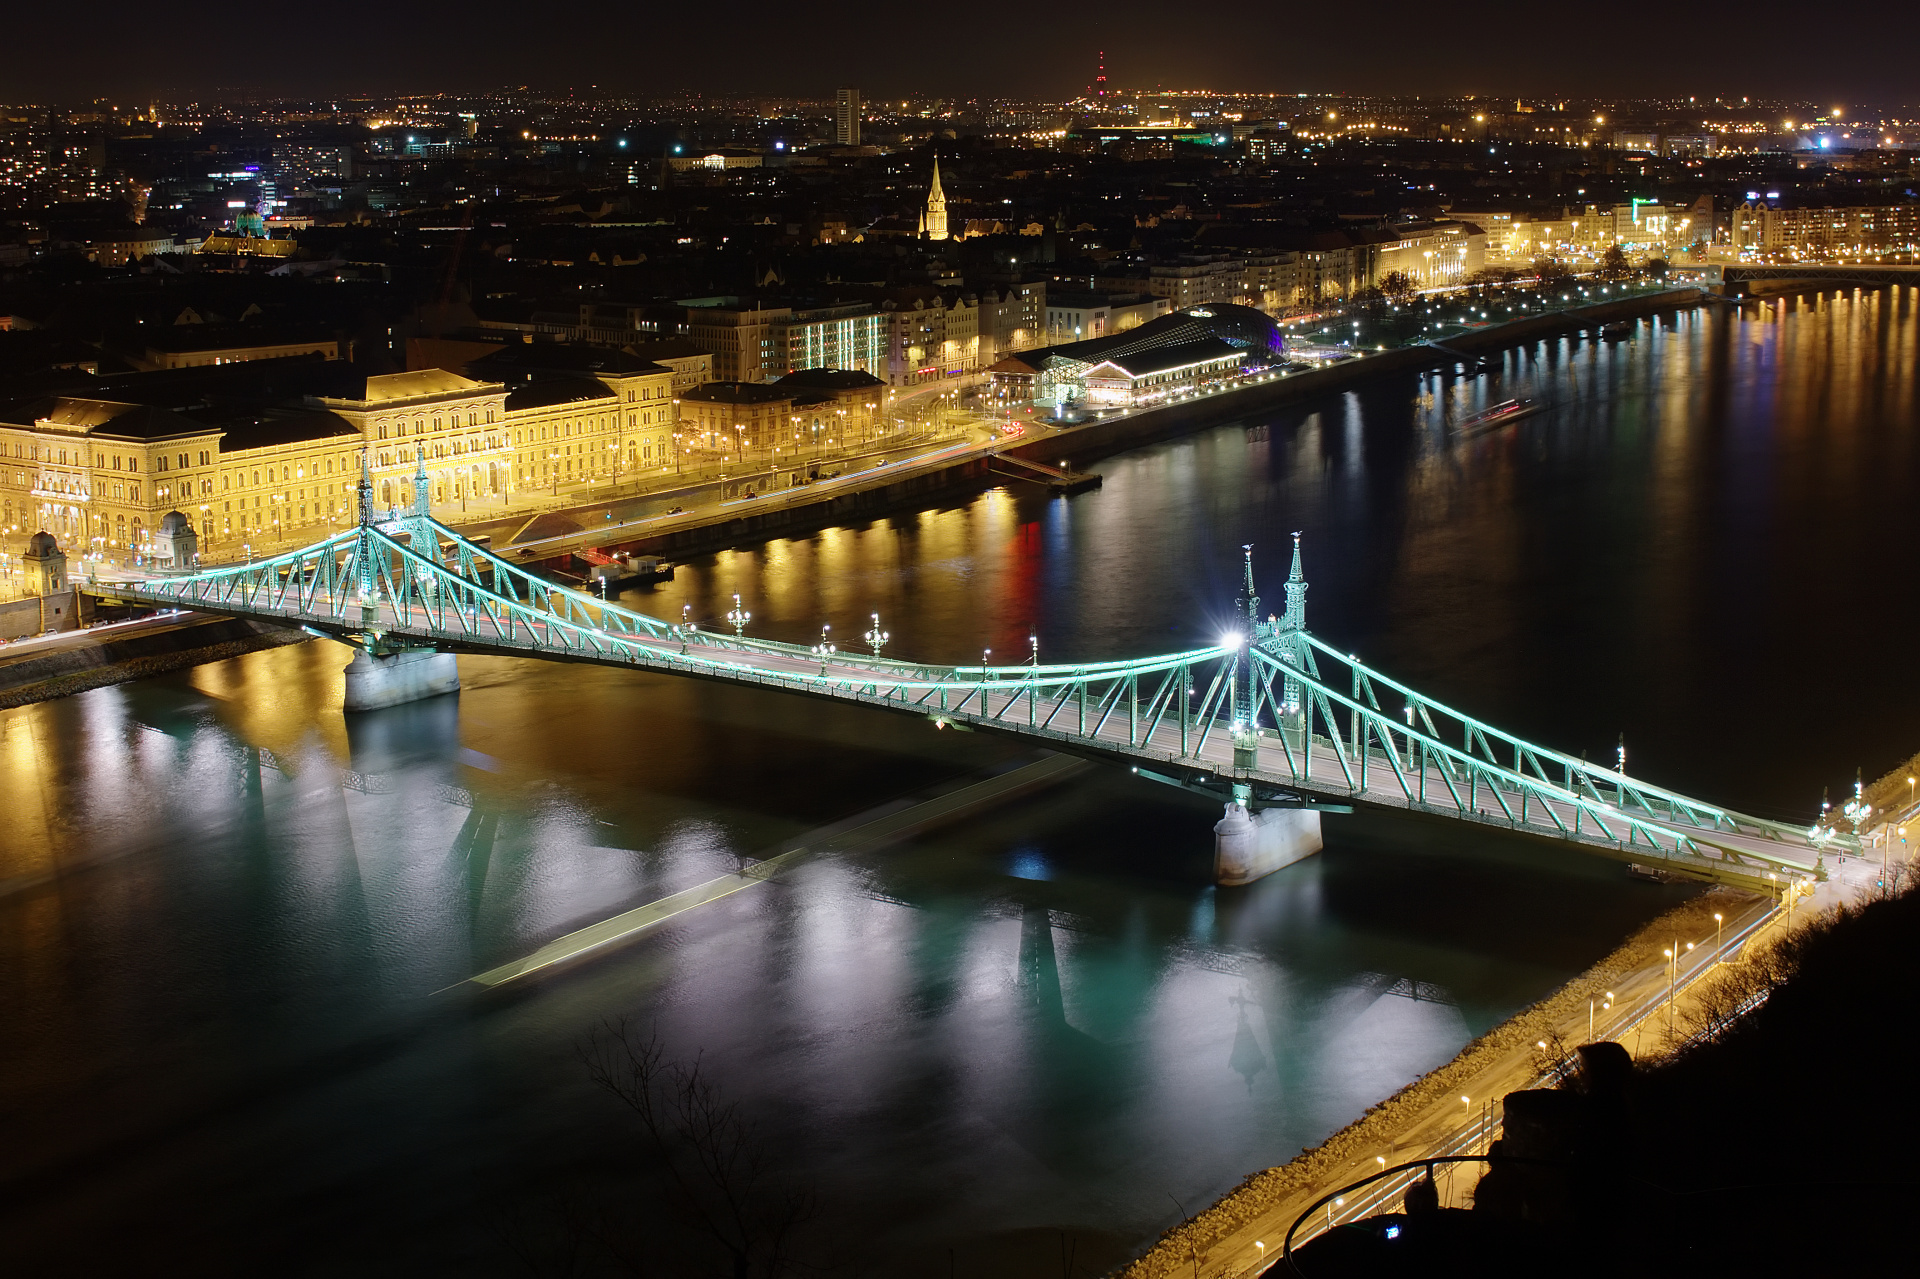 Szabadság híd - Liberty Bridge from Gellért Hill (Travels » Budapest » Budapest at Night)